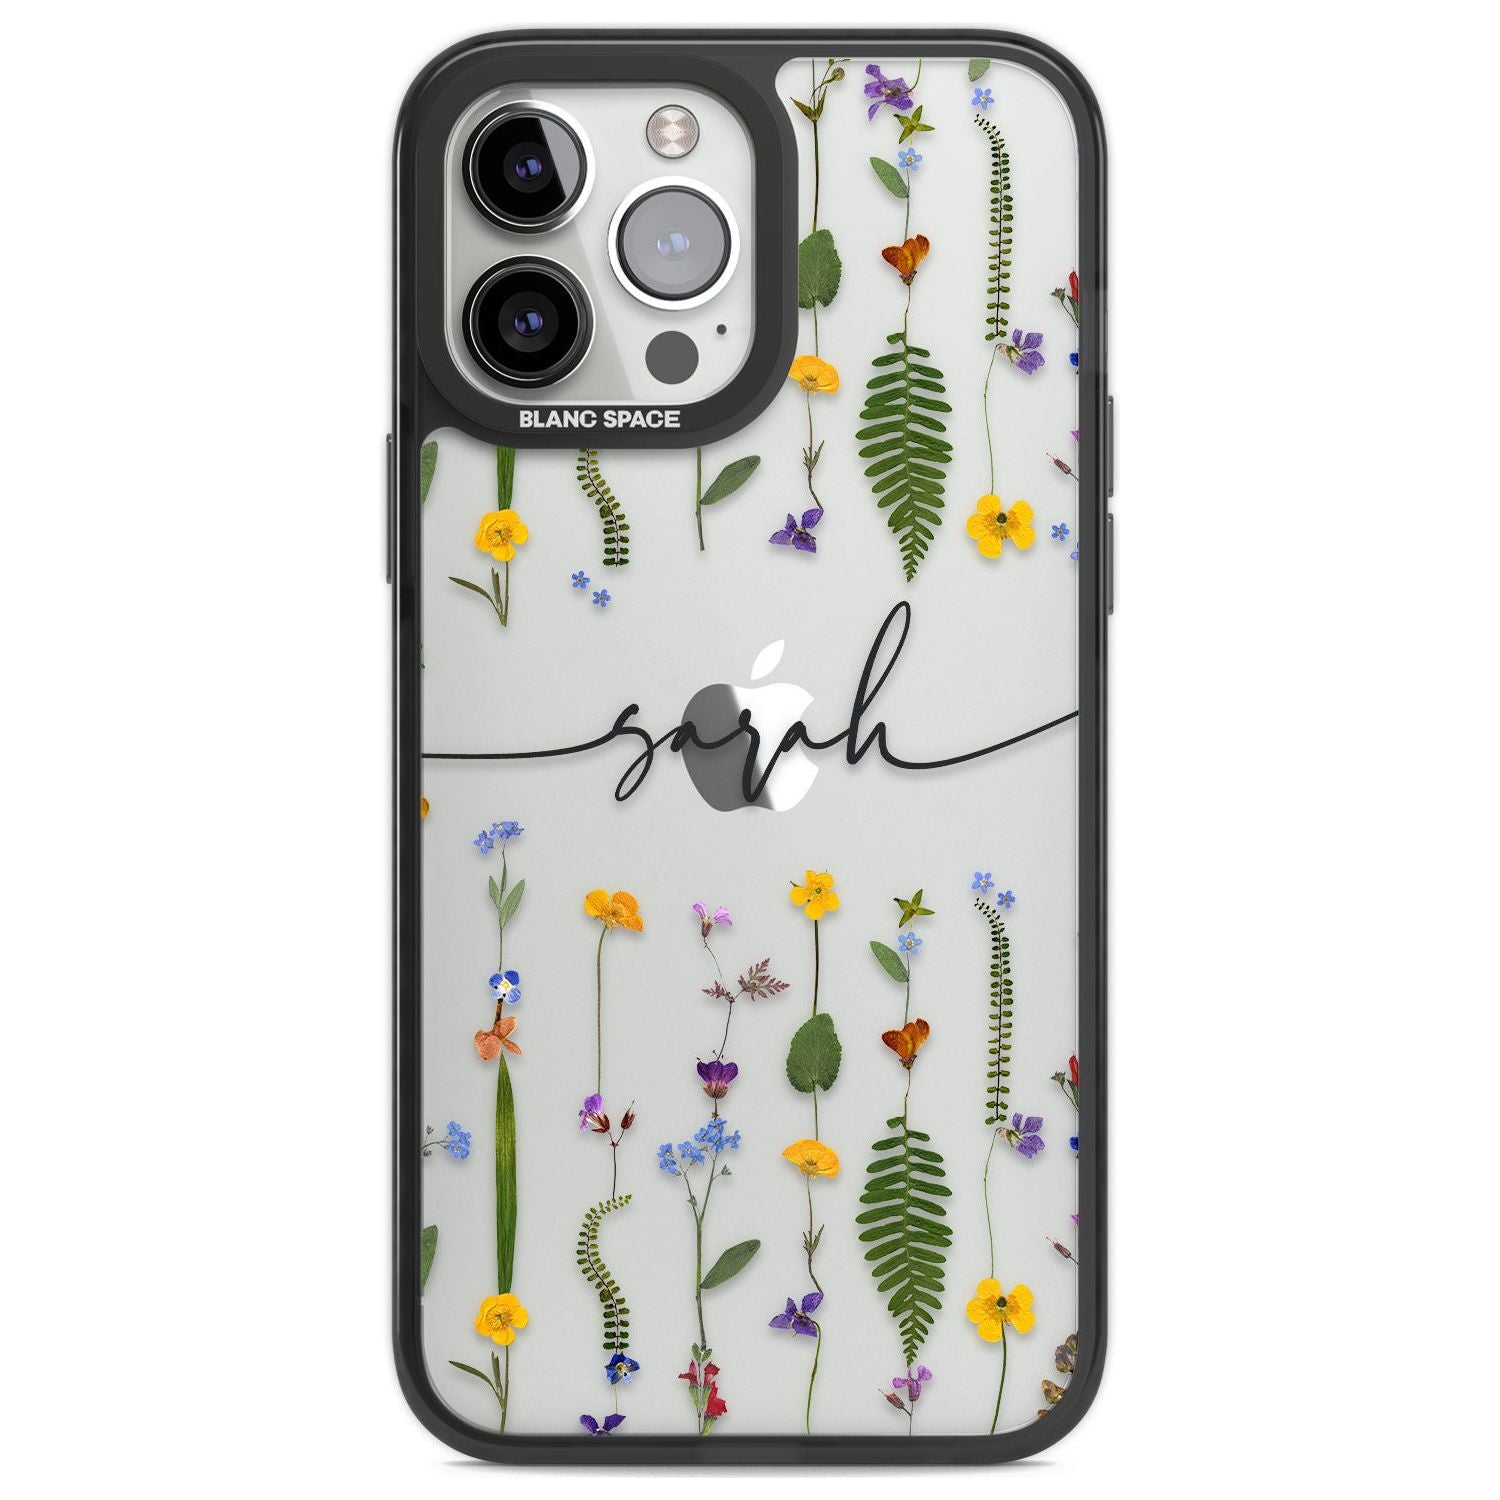 Personalised Wildflower Floral Custom Phone Case iPhone 13 Pro Max / Black Impact Case,iPhone 14 Pro Max / Black Impact Case Blanc Space